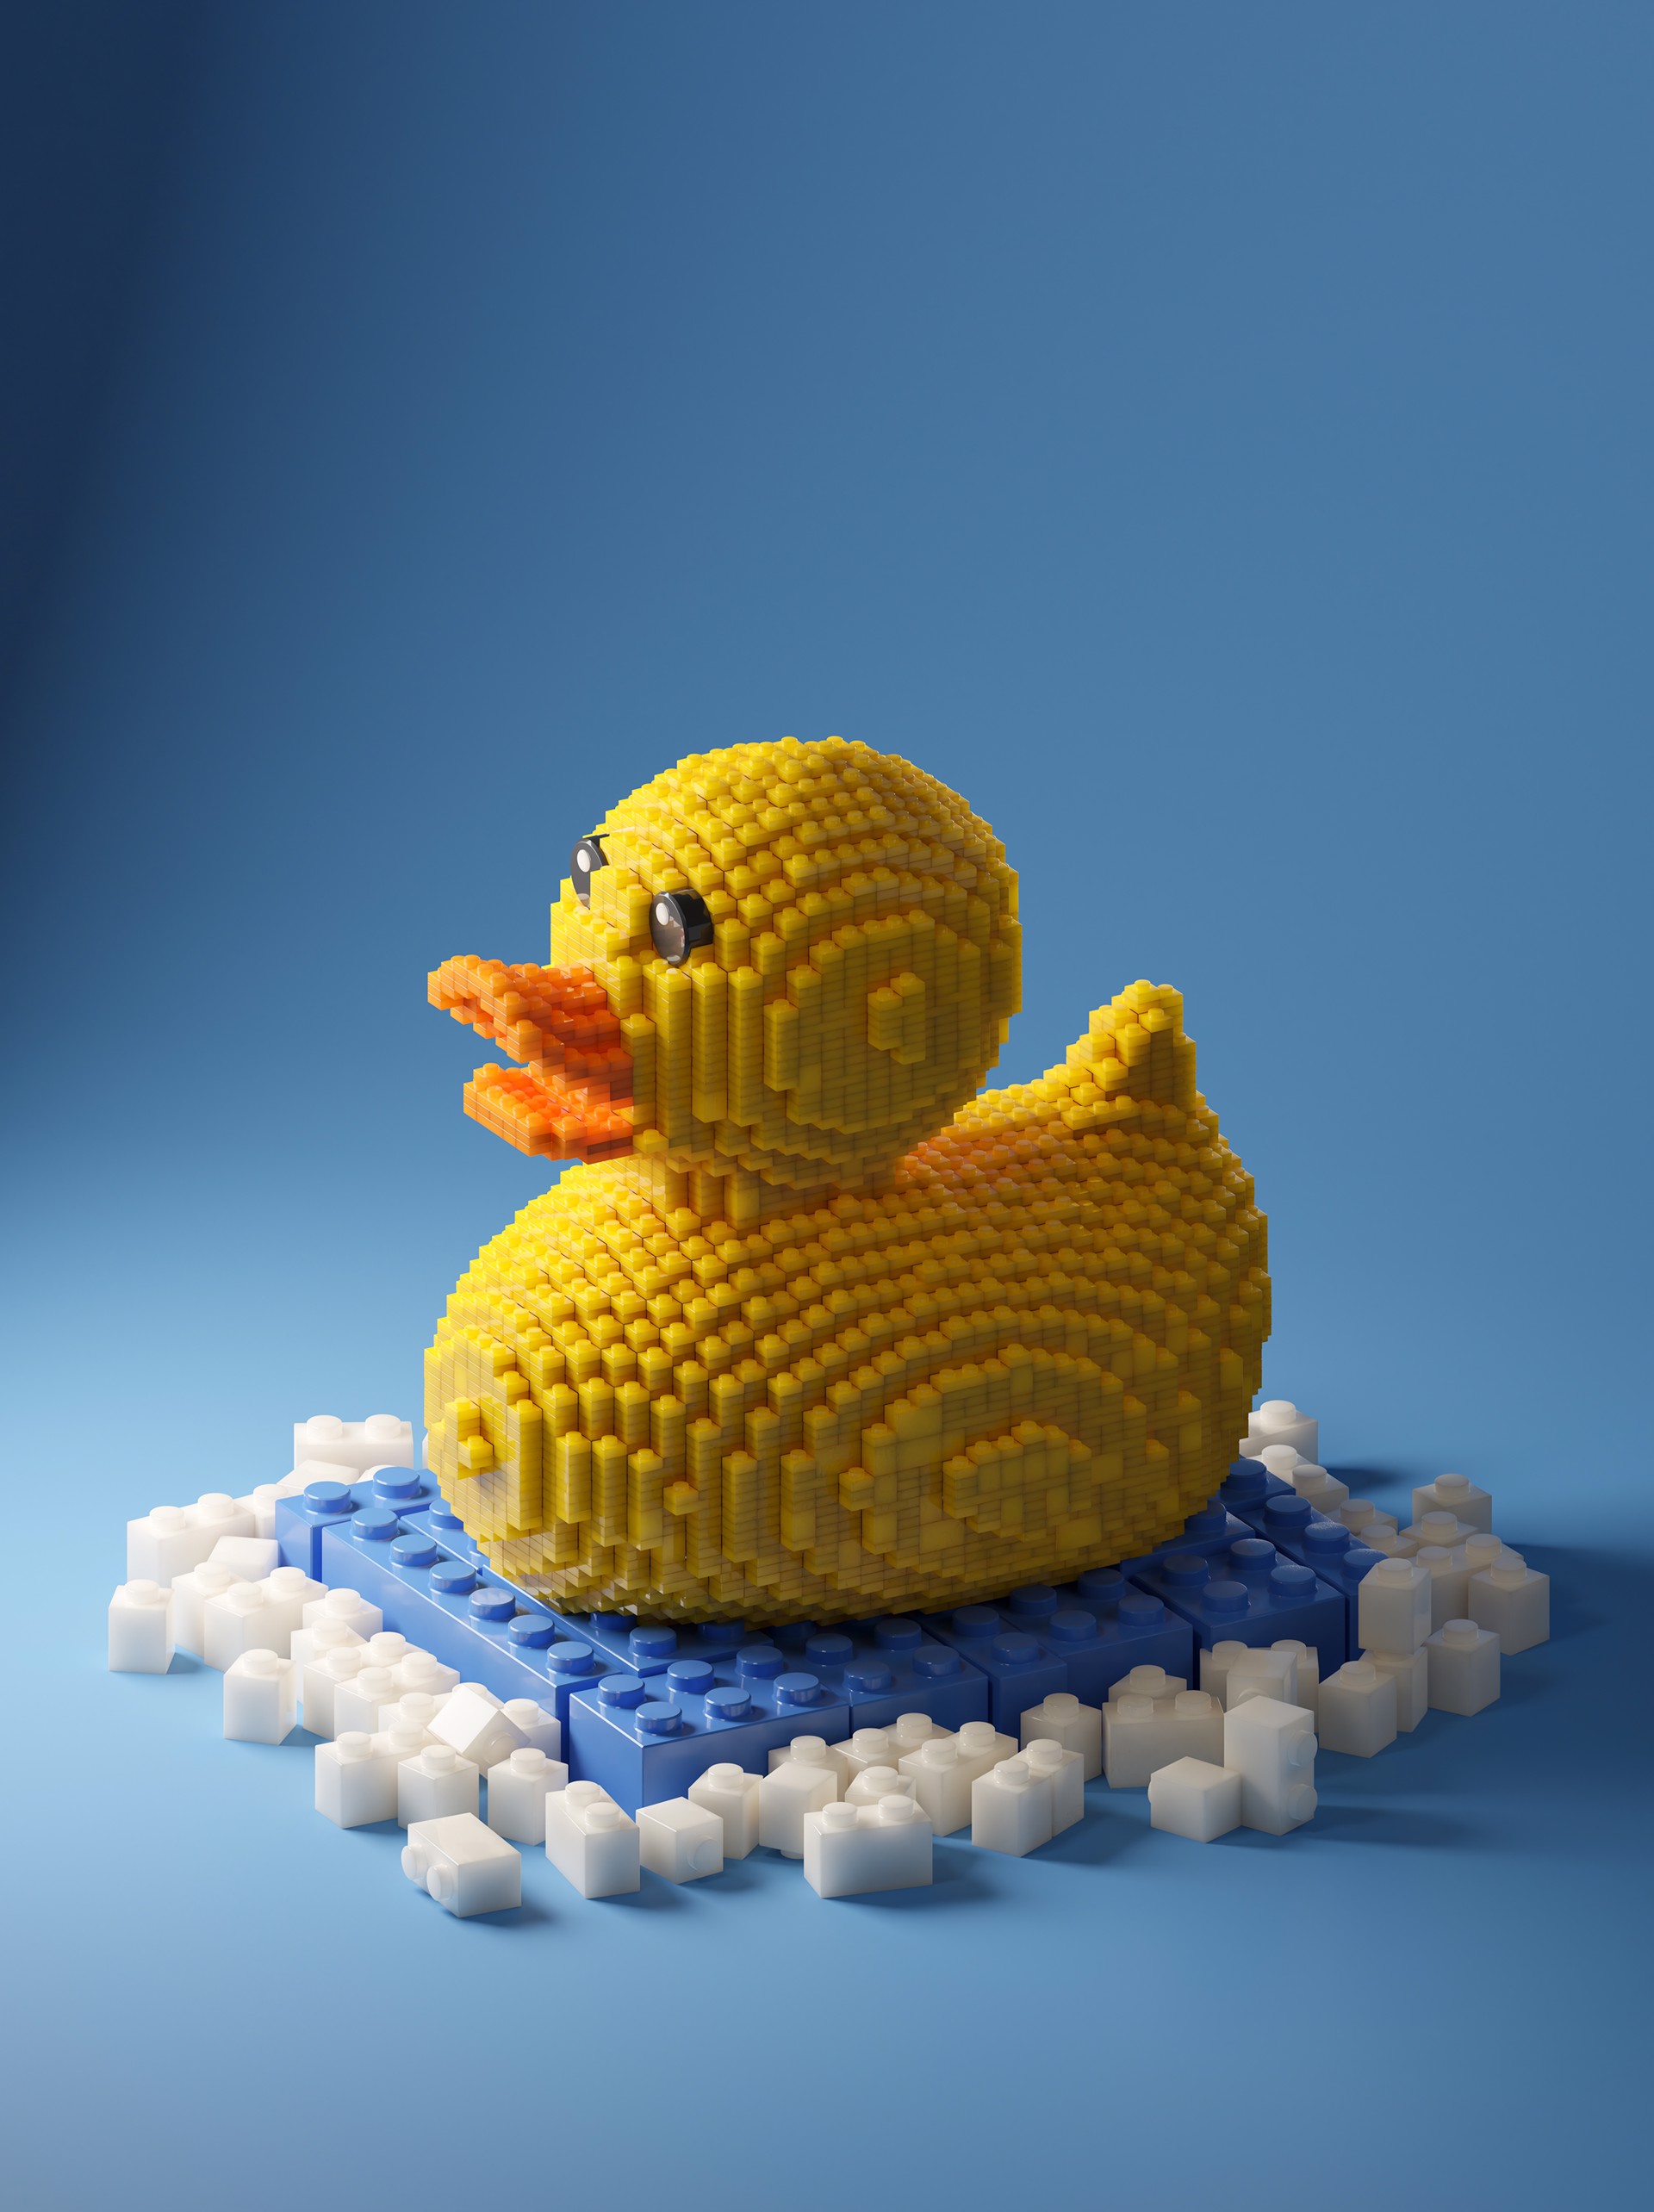 Ducky by Eli Warren